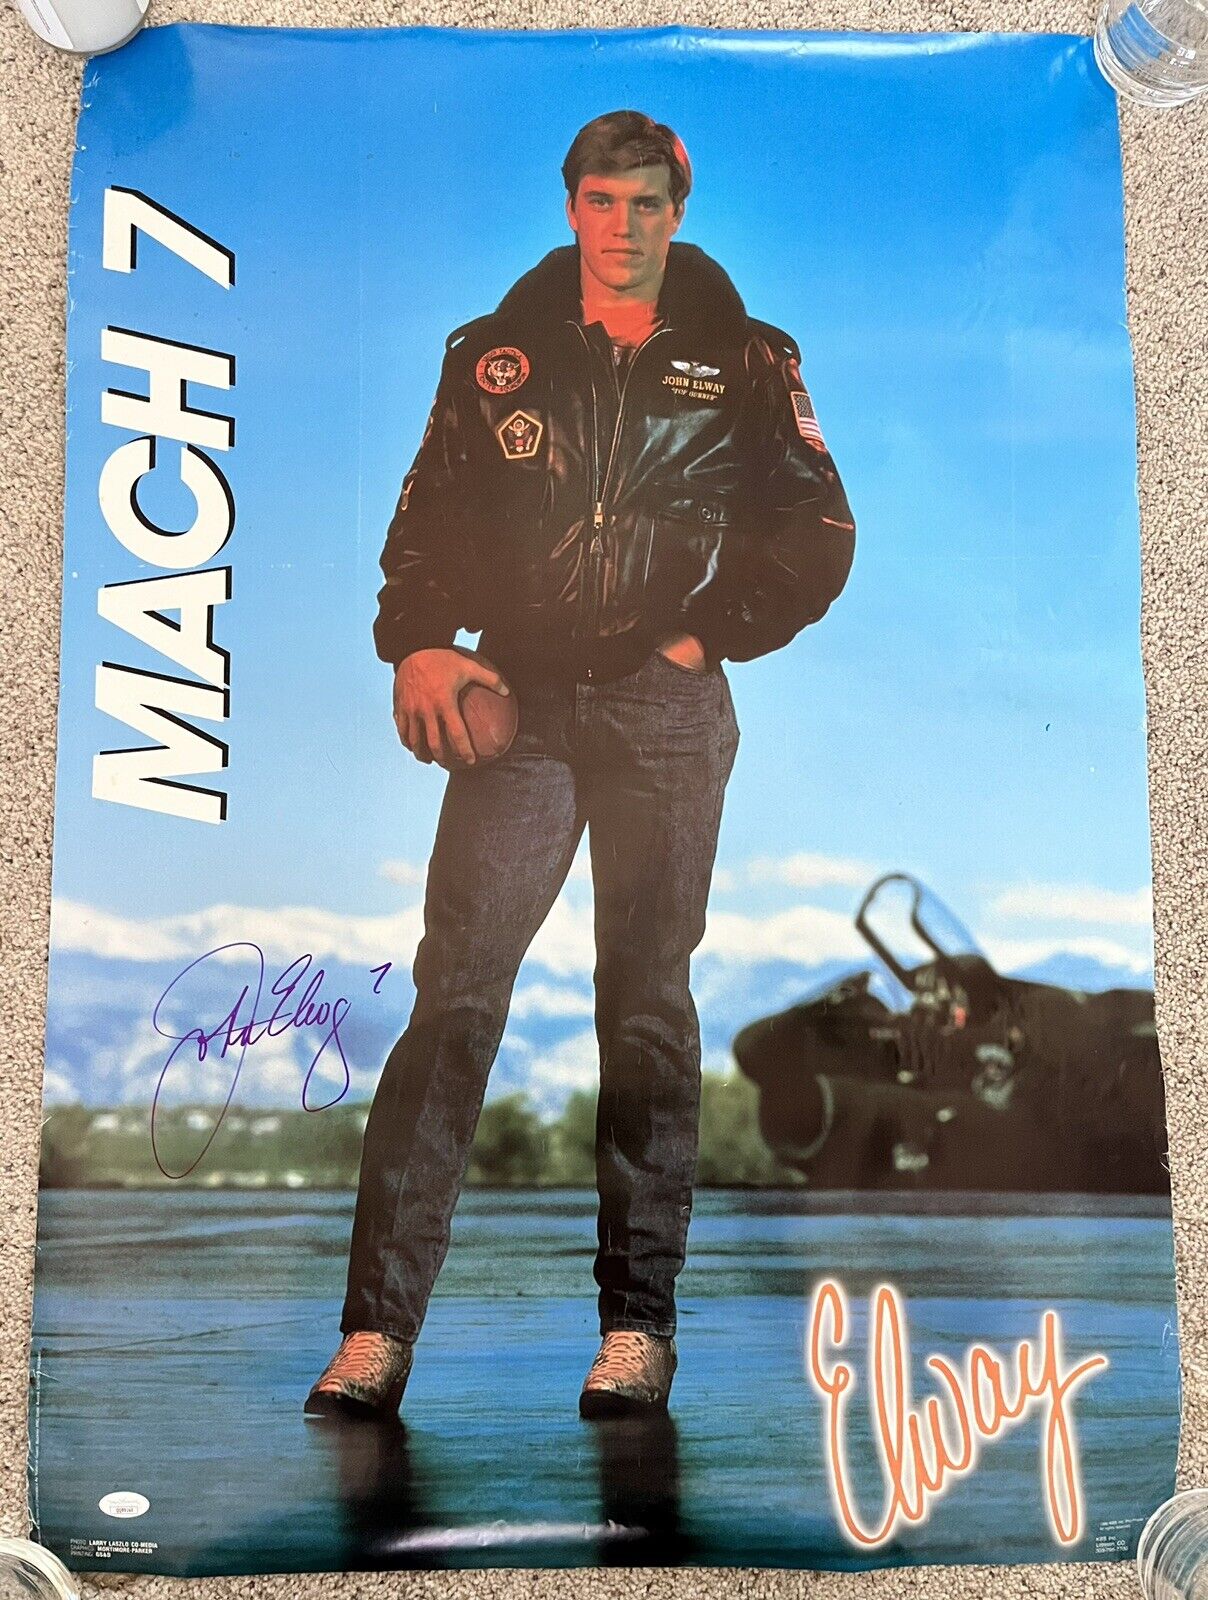 John Elway Mach 7 Vintage Kbs Inc. Poster 1986 Denver Broncos Signed Jsa Coa